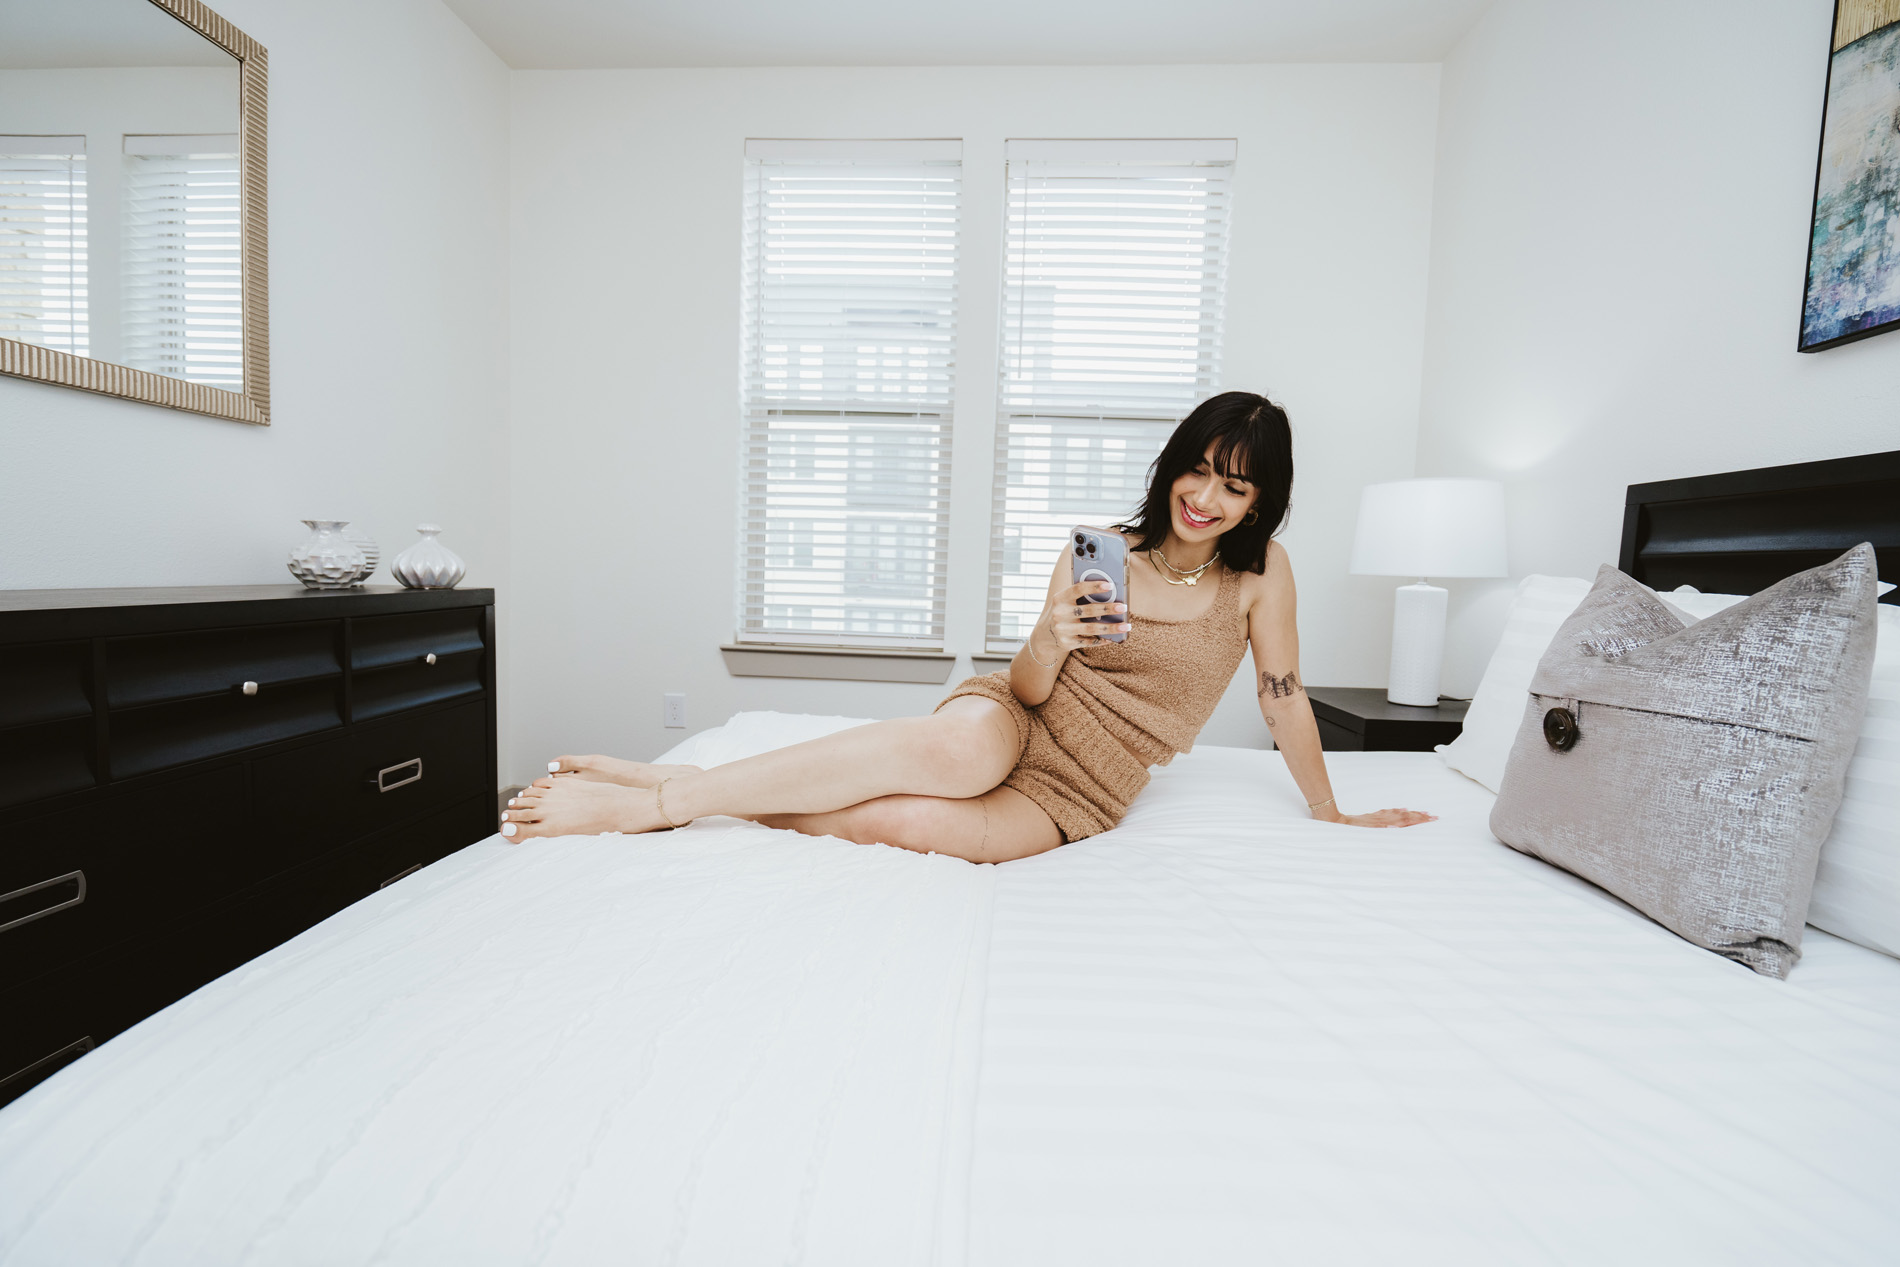 Vitruvian West woman in bedroom